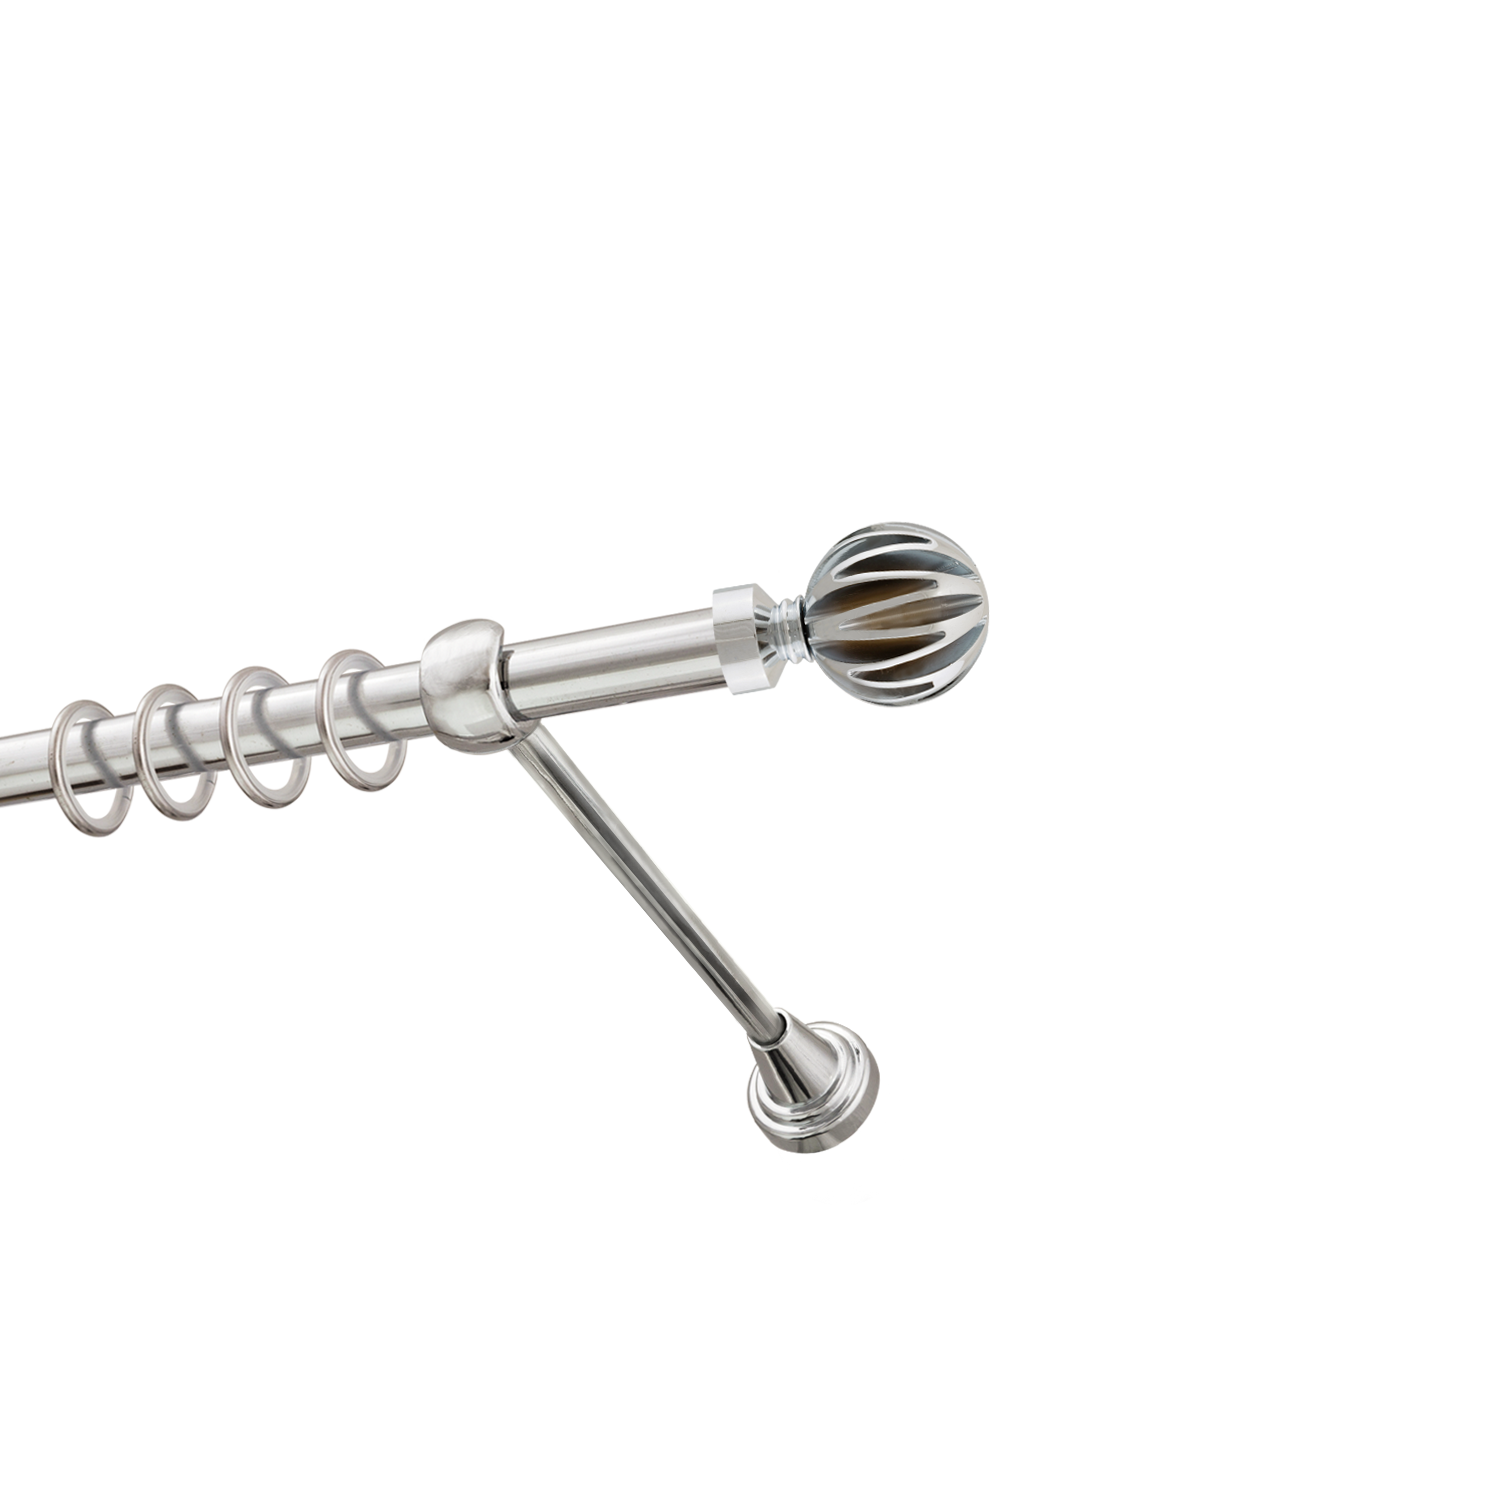 Металлический карниз для штор Шафран, однорядный 16 мм, серебро, гладкая штанга, длина 140 см - фото Wikidecor.ru